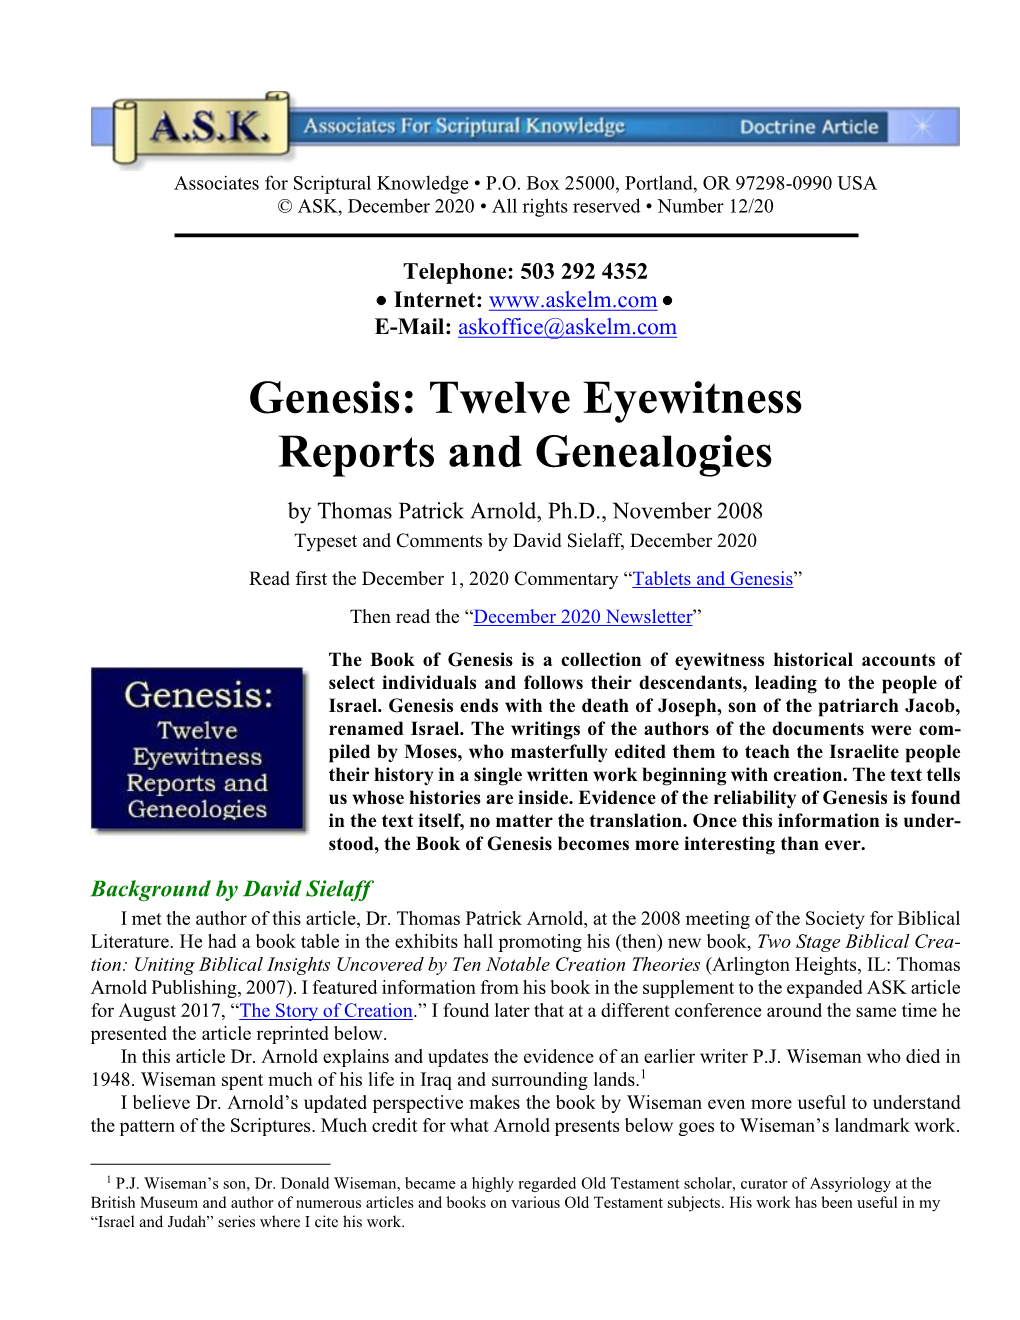 Genesis: Twelve Eyewitness Reports and Genealogies